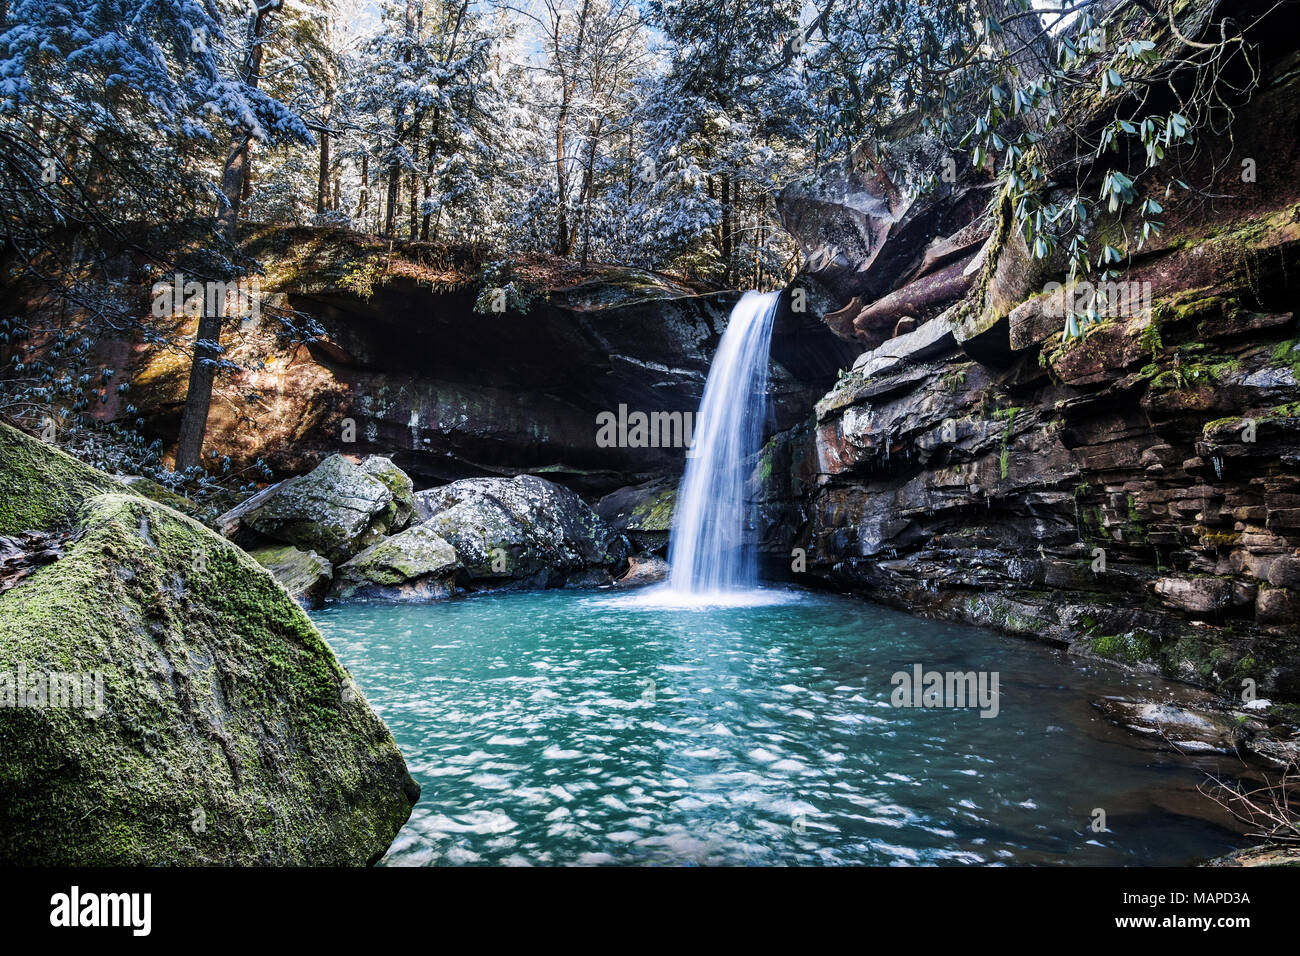 Wasser fließt von einem Wasserfall in diesem Winter Szene in einem Laubwald. Stockfoto